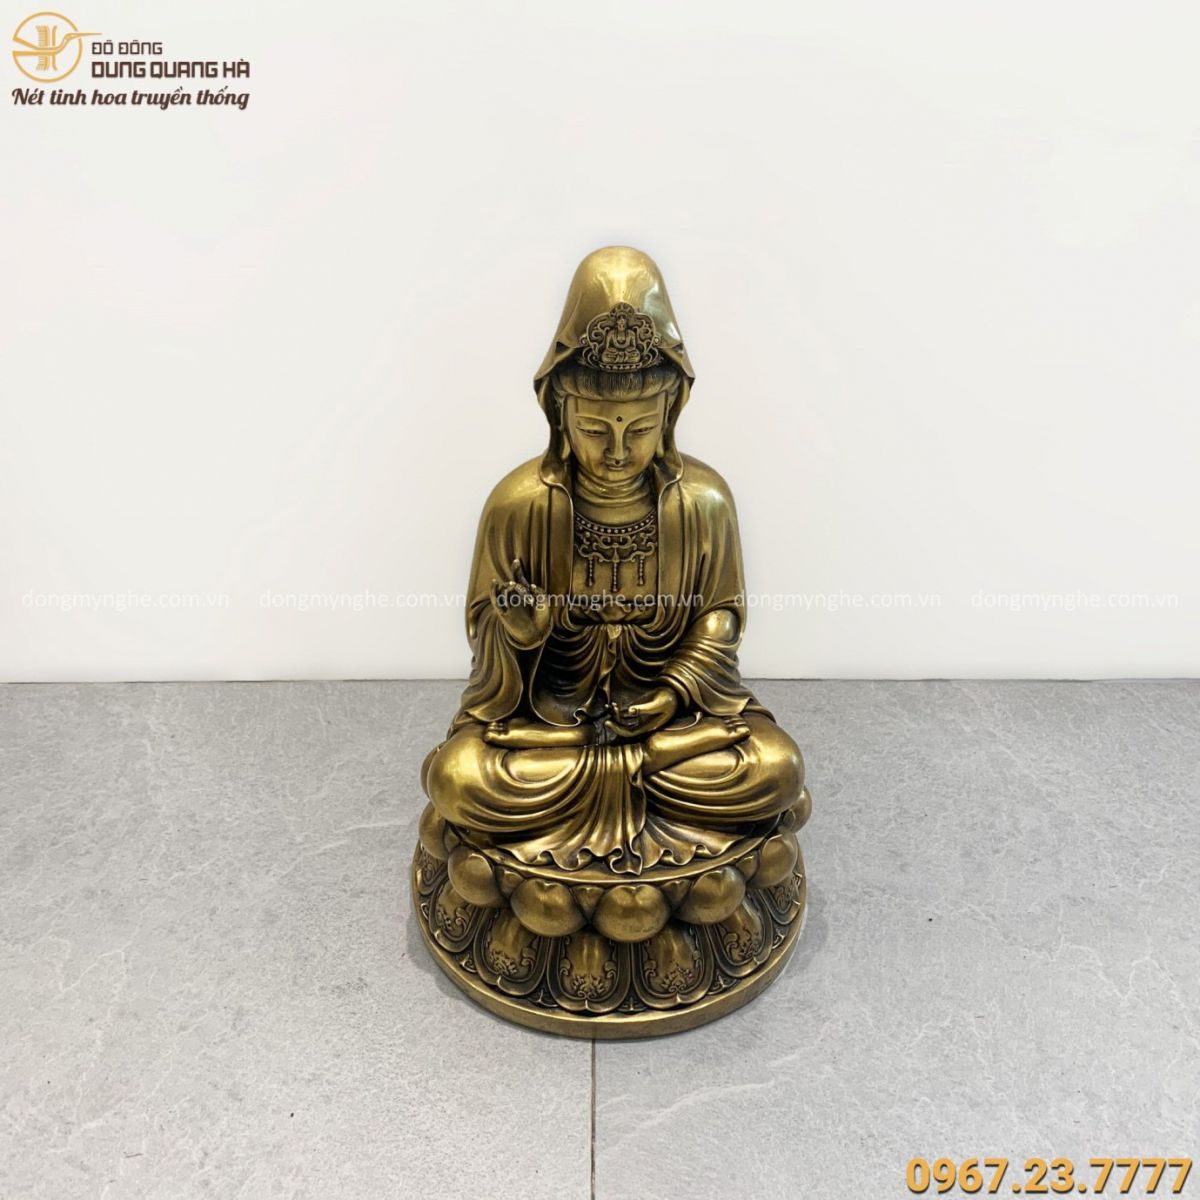 Tượng Phật Quan Âm đẹp tôn nghiêm bằng đồng vàng cao 40cm